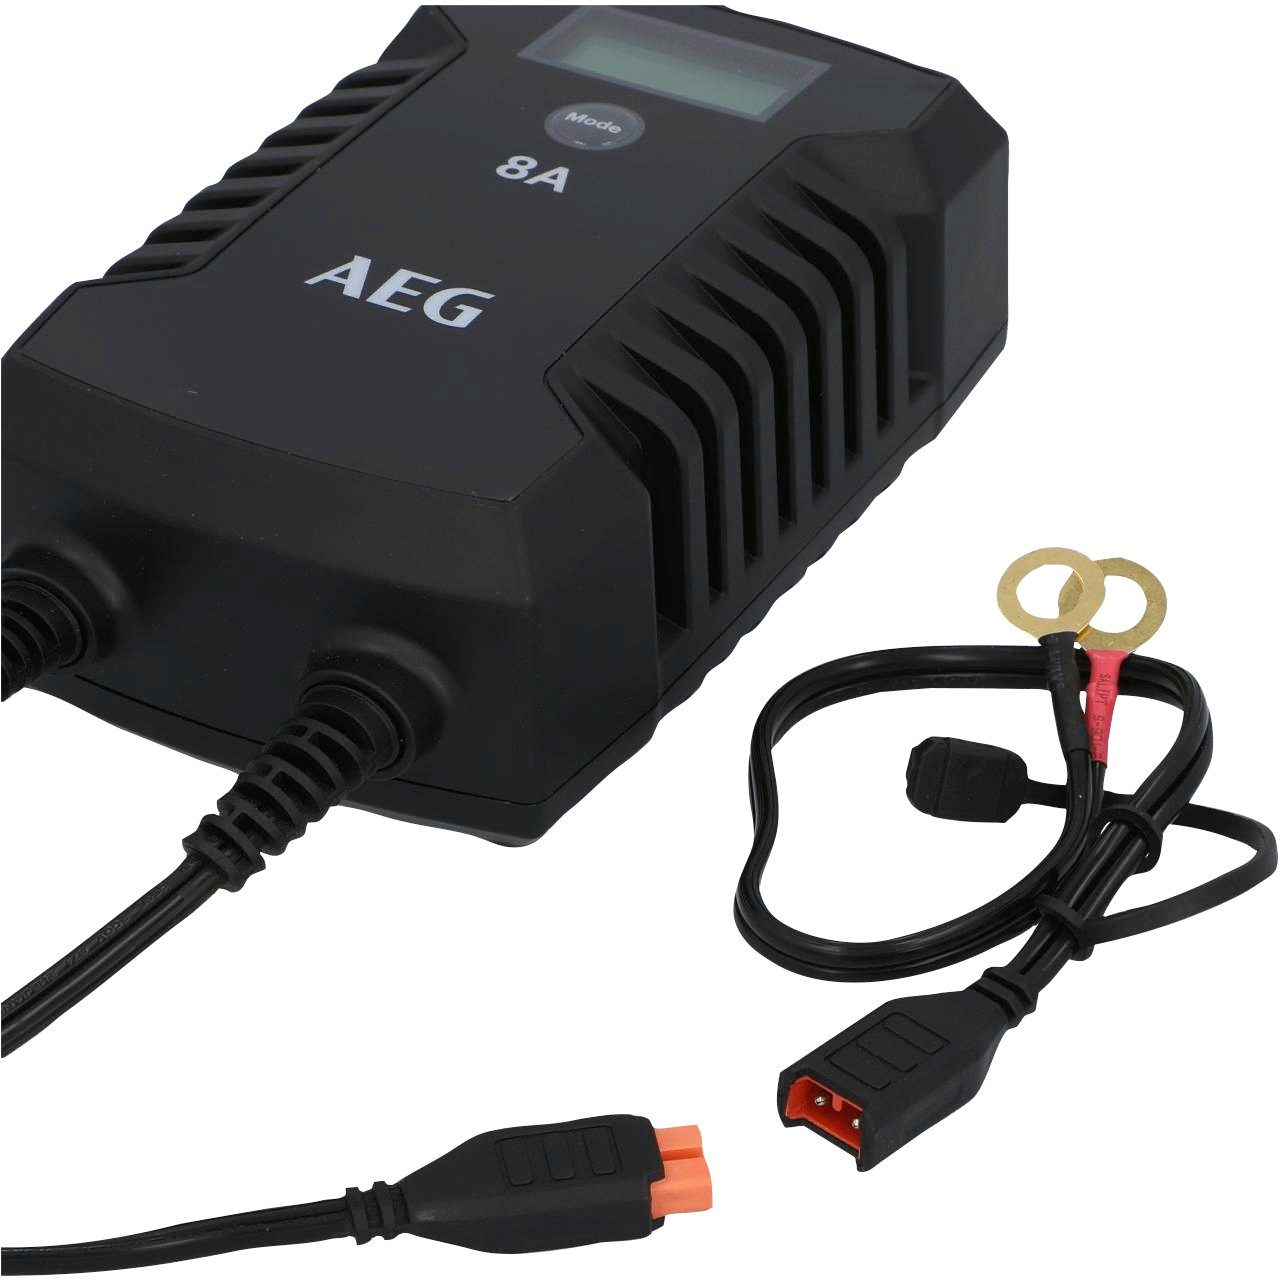 AEG LD8 Autobatterie-Ladegerät (8000 mA, IP66)